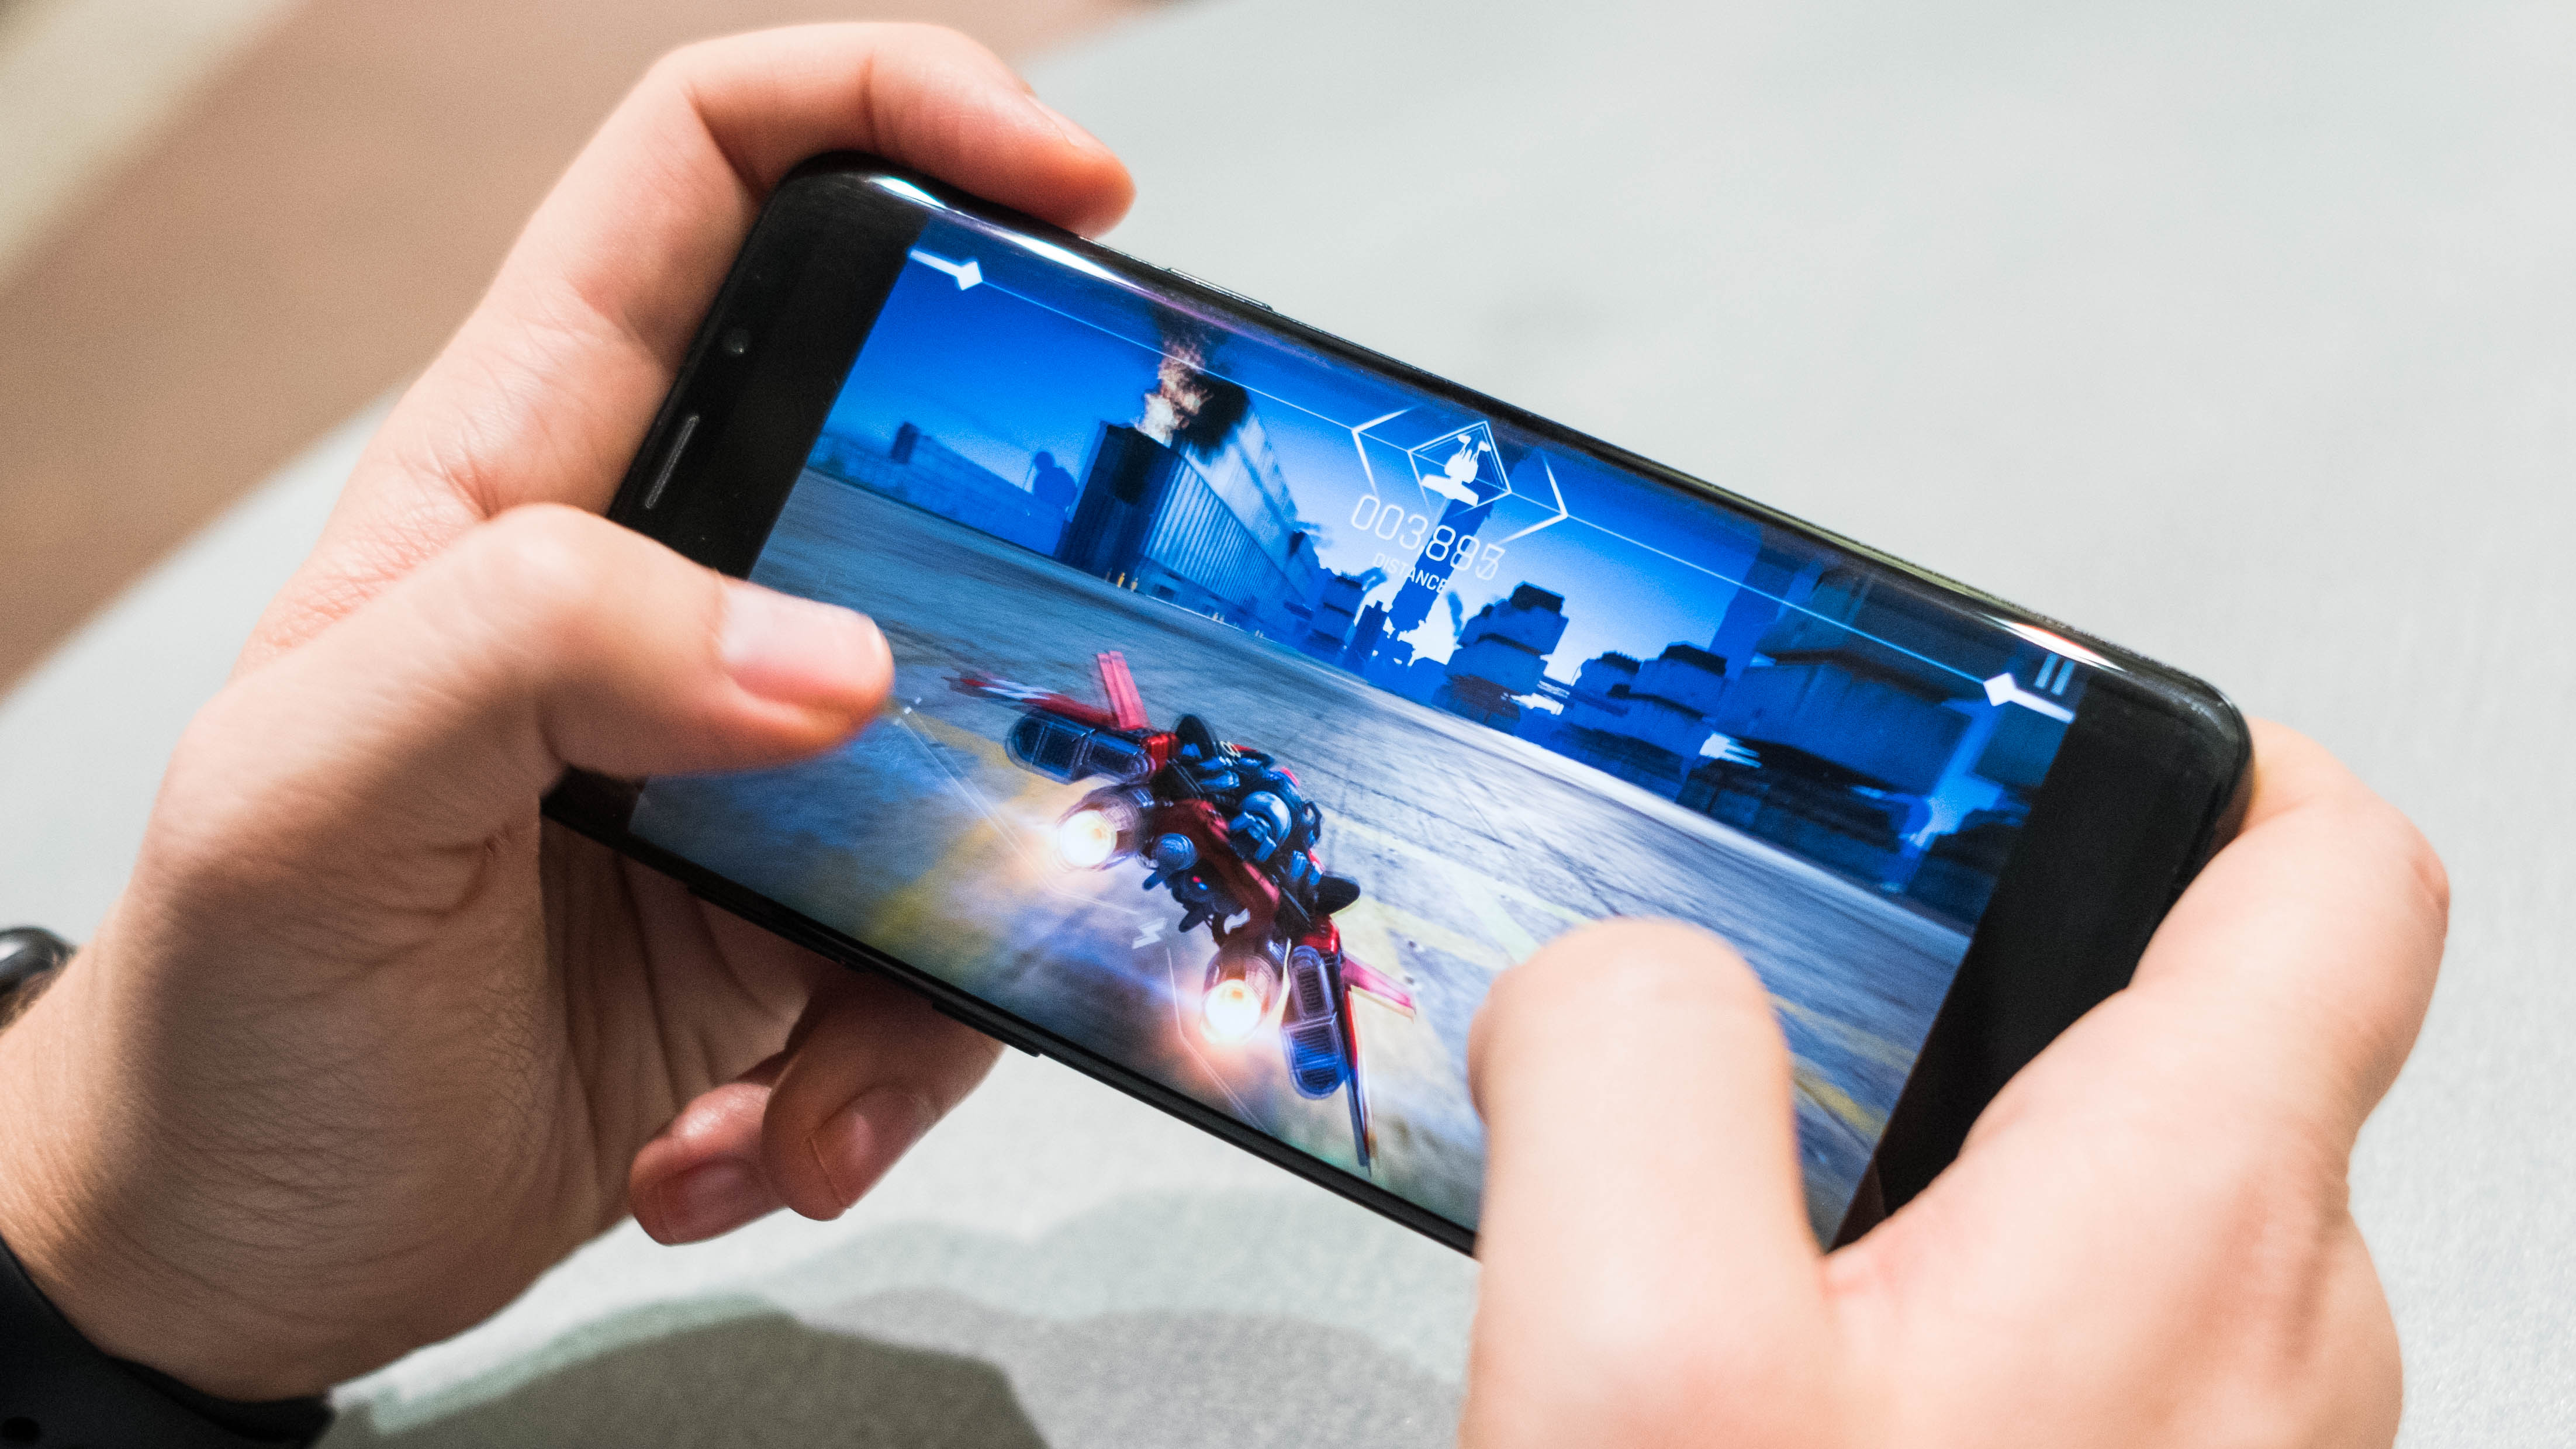 Juegos móviles en Android - imagen de noticias en imei.info